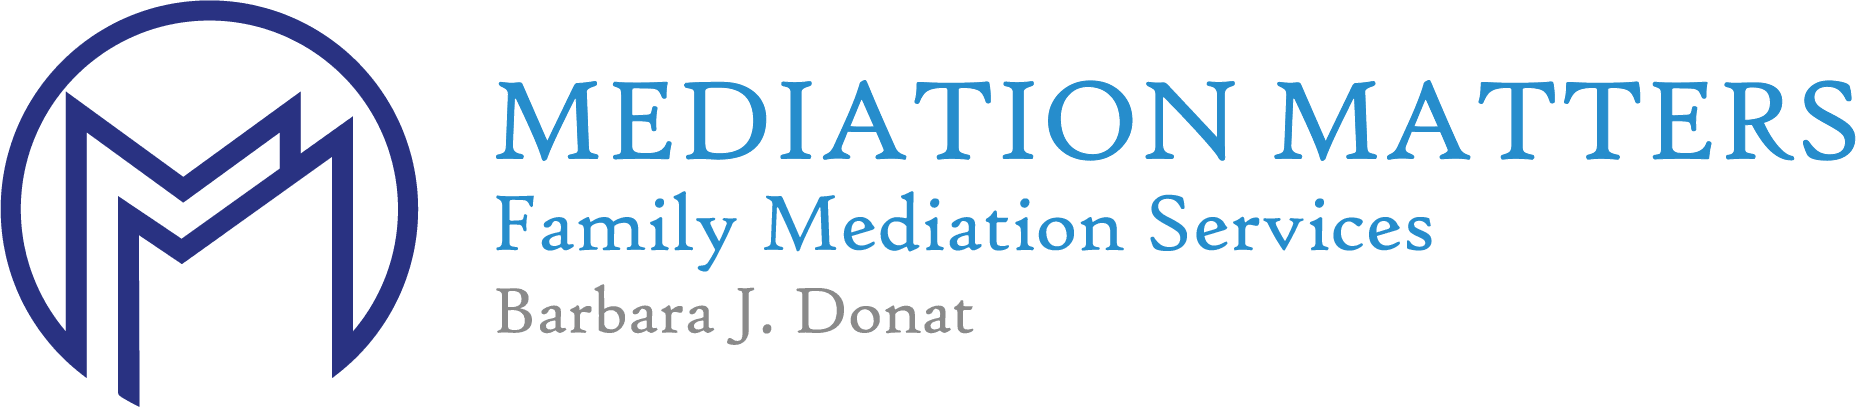 Mediation Matters Logo in Blue